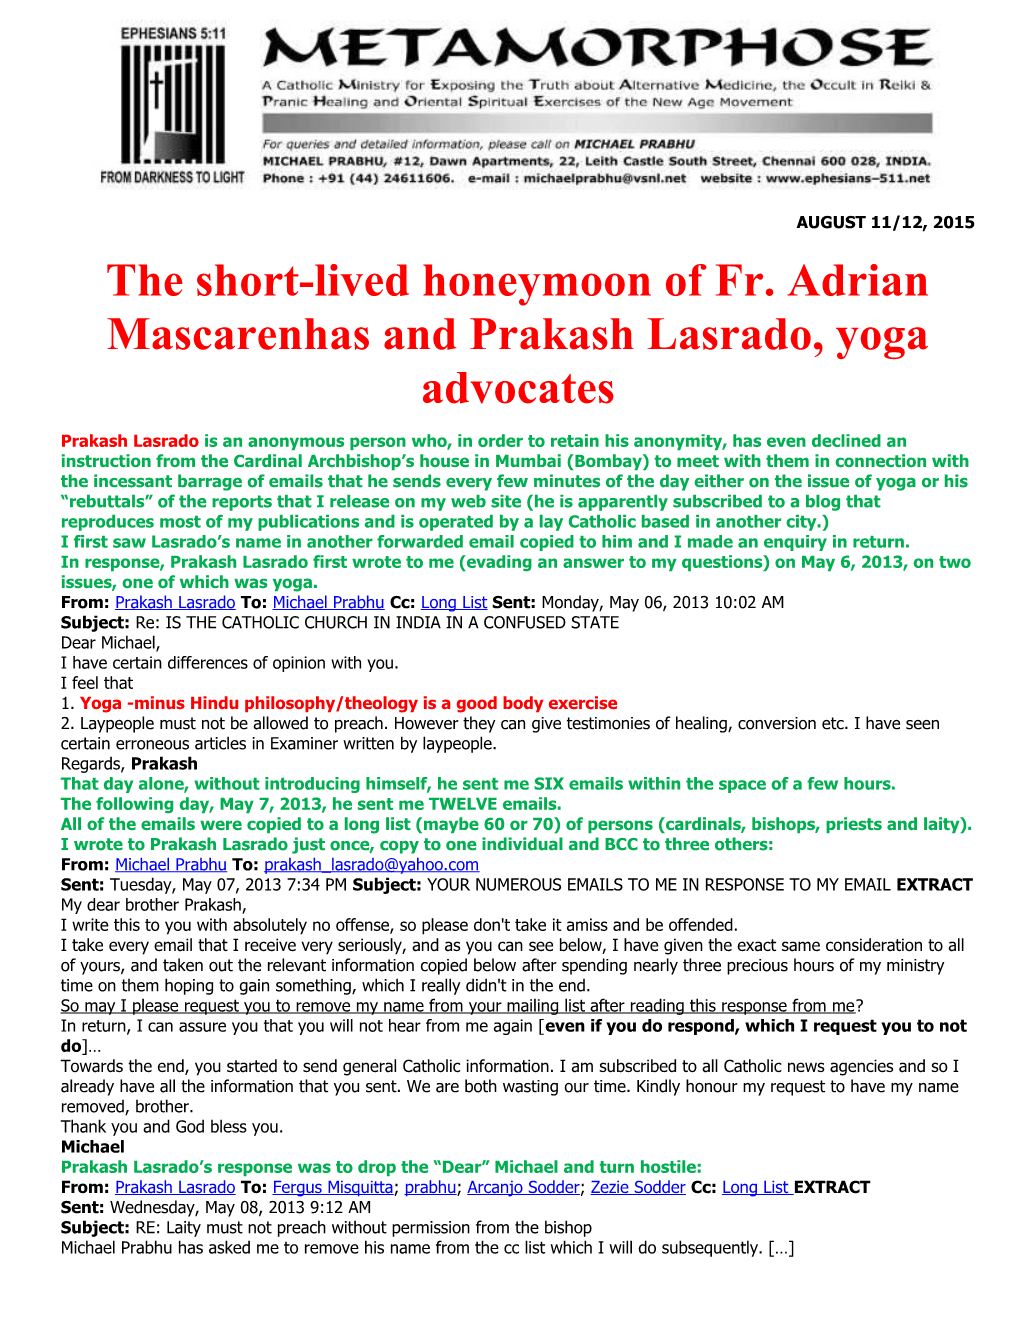 The Short-Lived Honeymoon of Fr. Adrian Mascarenhas and Prakash Lasrado, Yoga Advocates